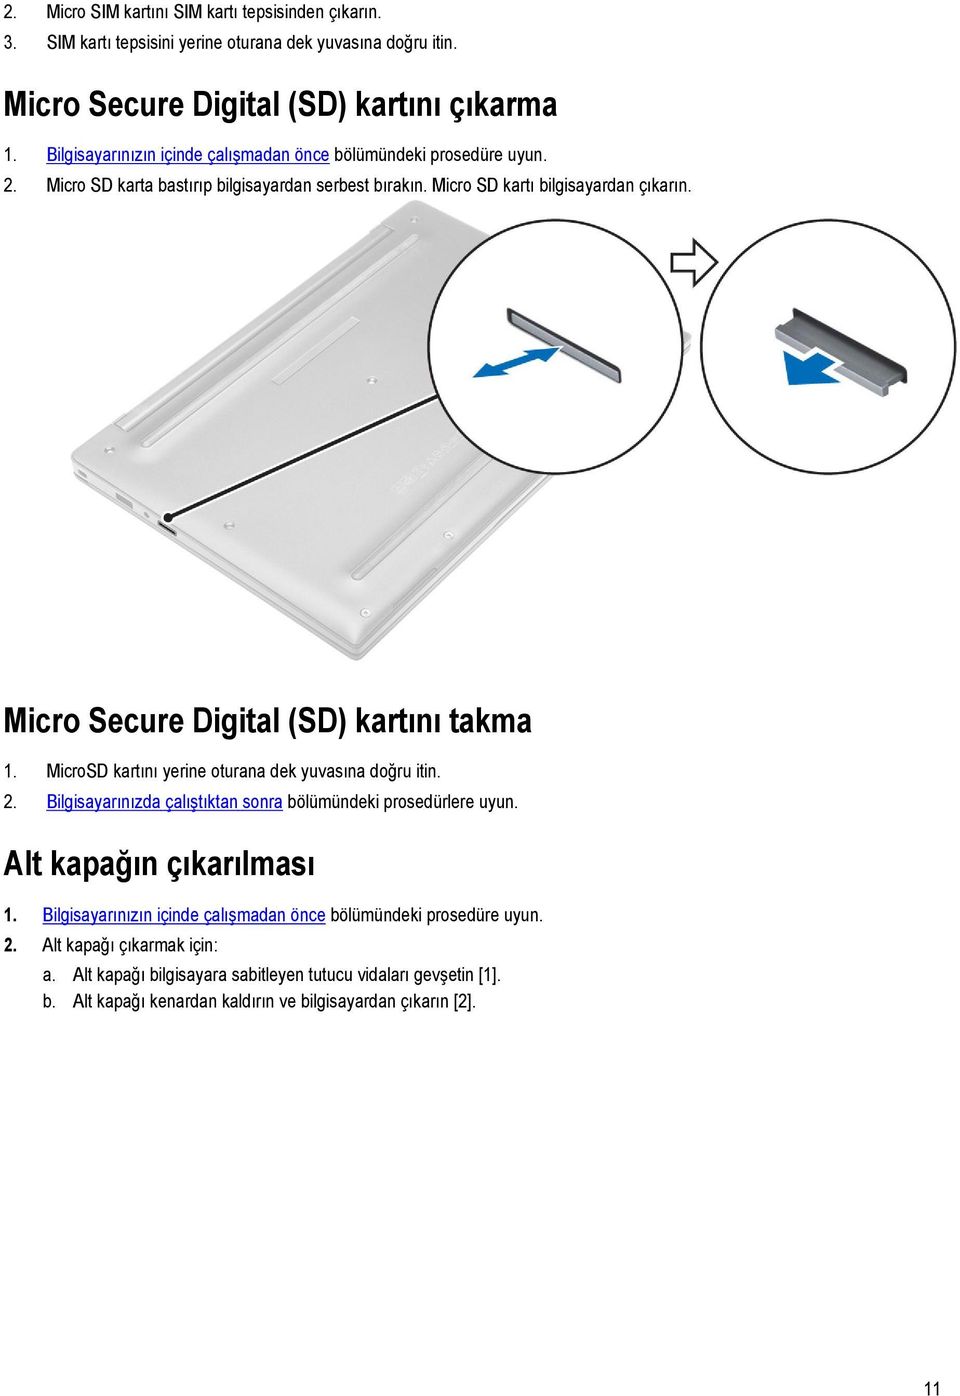 Micro Secure Digital (SD) kartını takma 1. MicroSD kartını yerine oturana dek yuvasına doğru itin. 2. Bilgisayarınızda çalıştıktan sonra bölümündeki prosedürlere uyun.